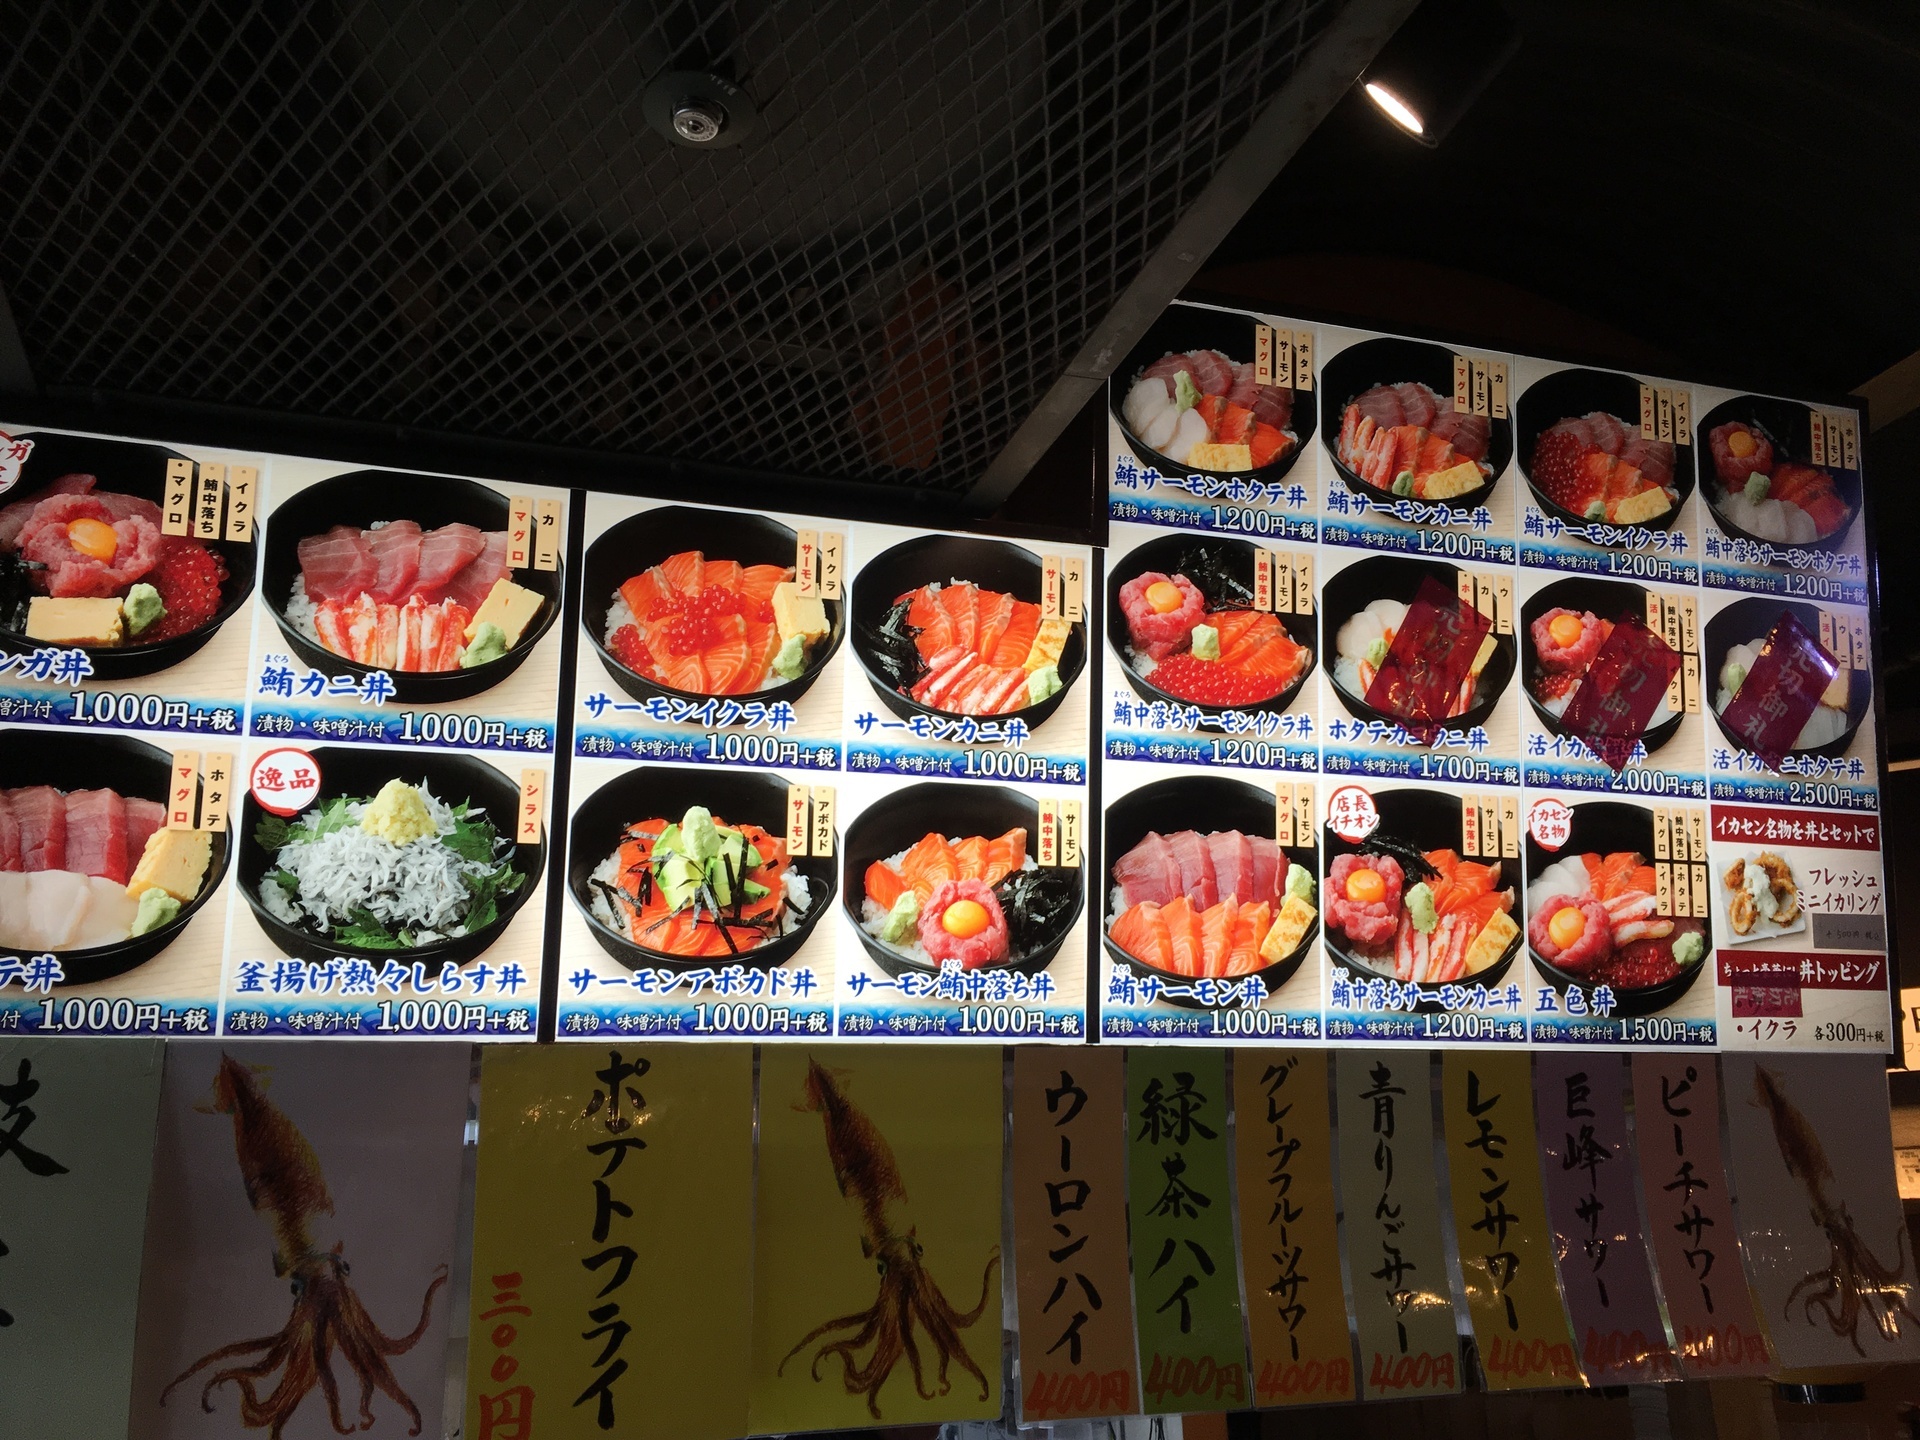 横浜赤レンガ倉庫で海鮮丼 横浜イカセンター グルメな方にオススメ 全国各地の美味い店